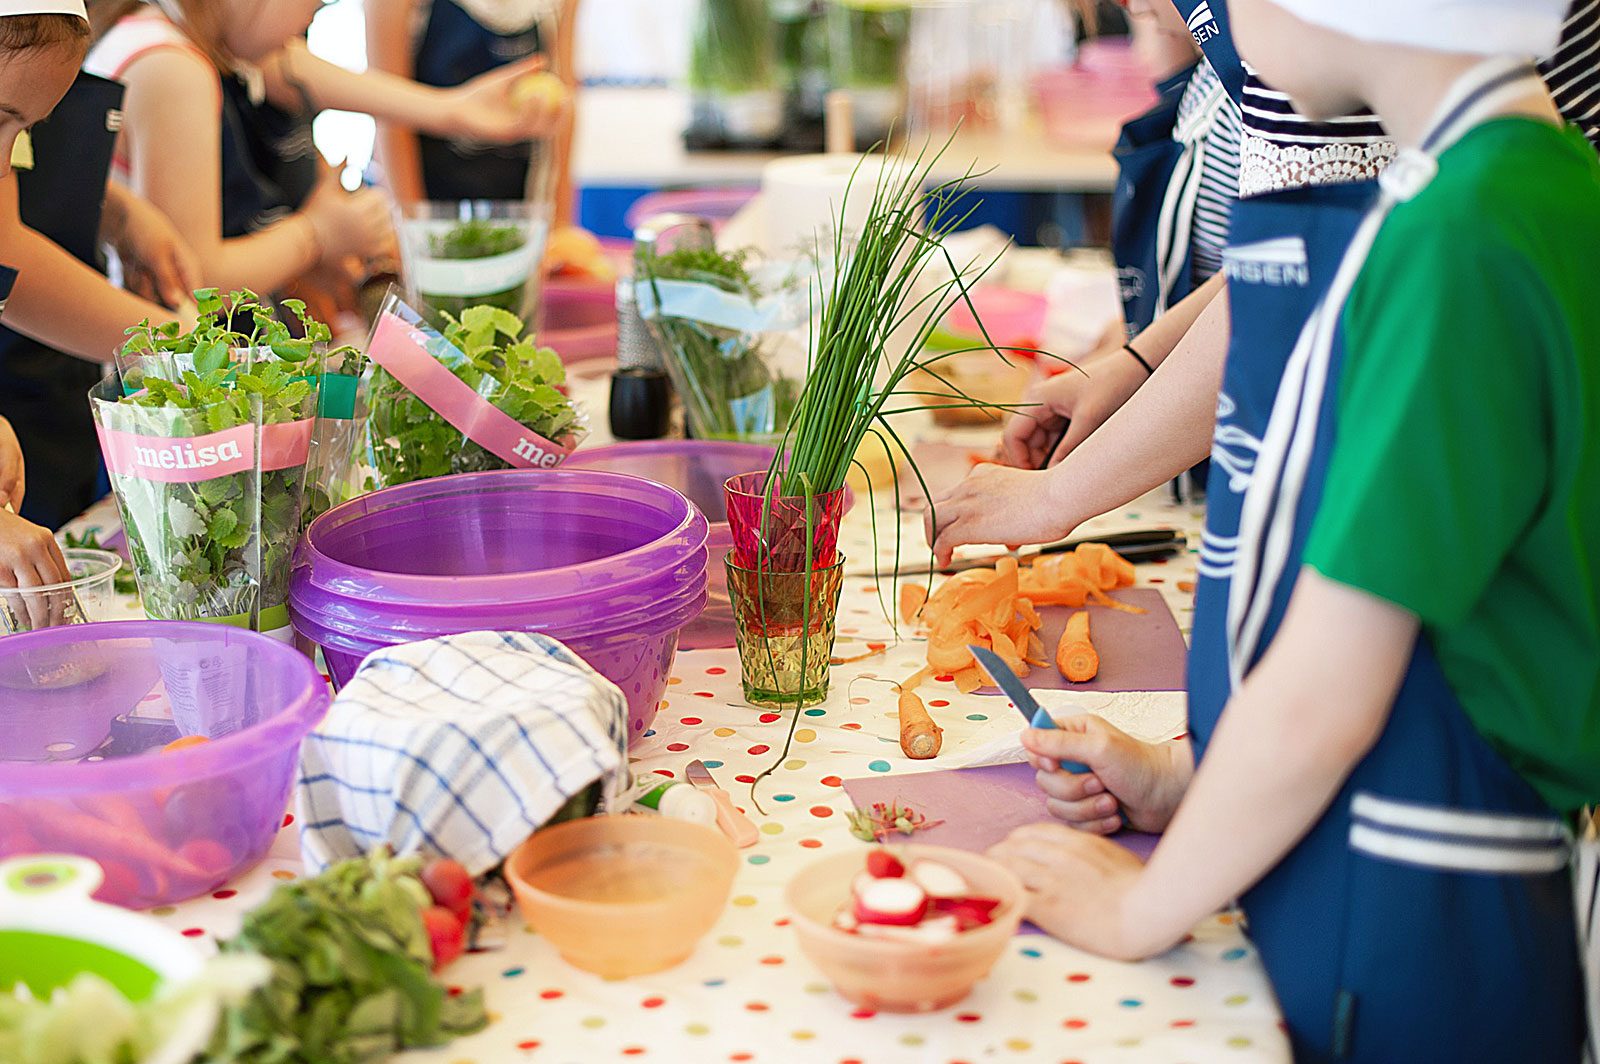 Crianças a preparar alimentos, sobre uma mesa, para posterior confecção.